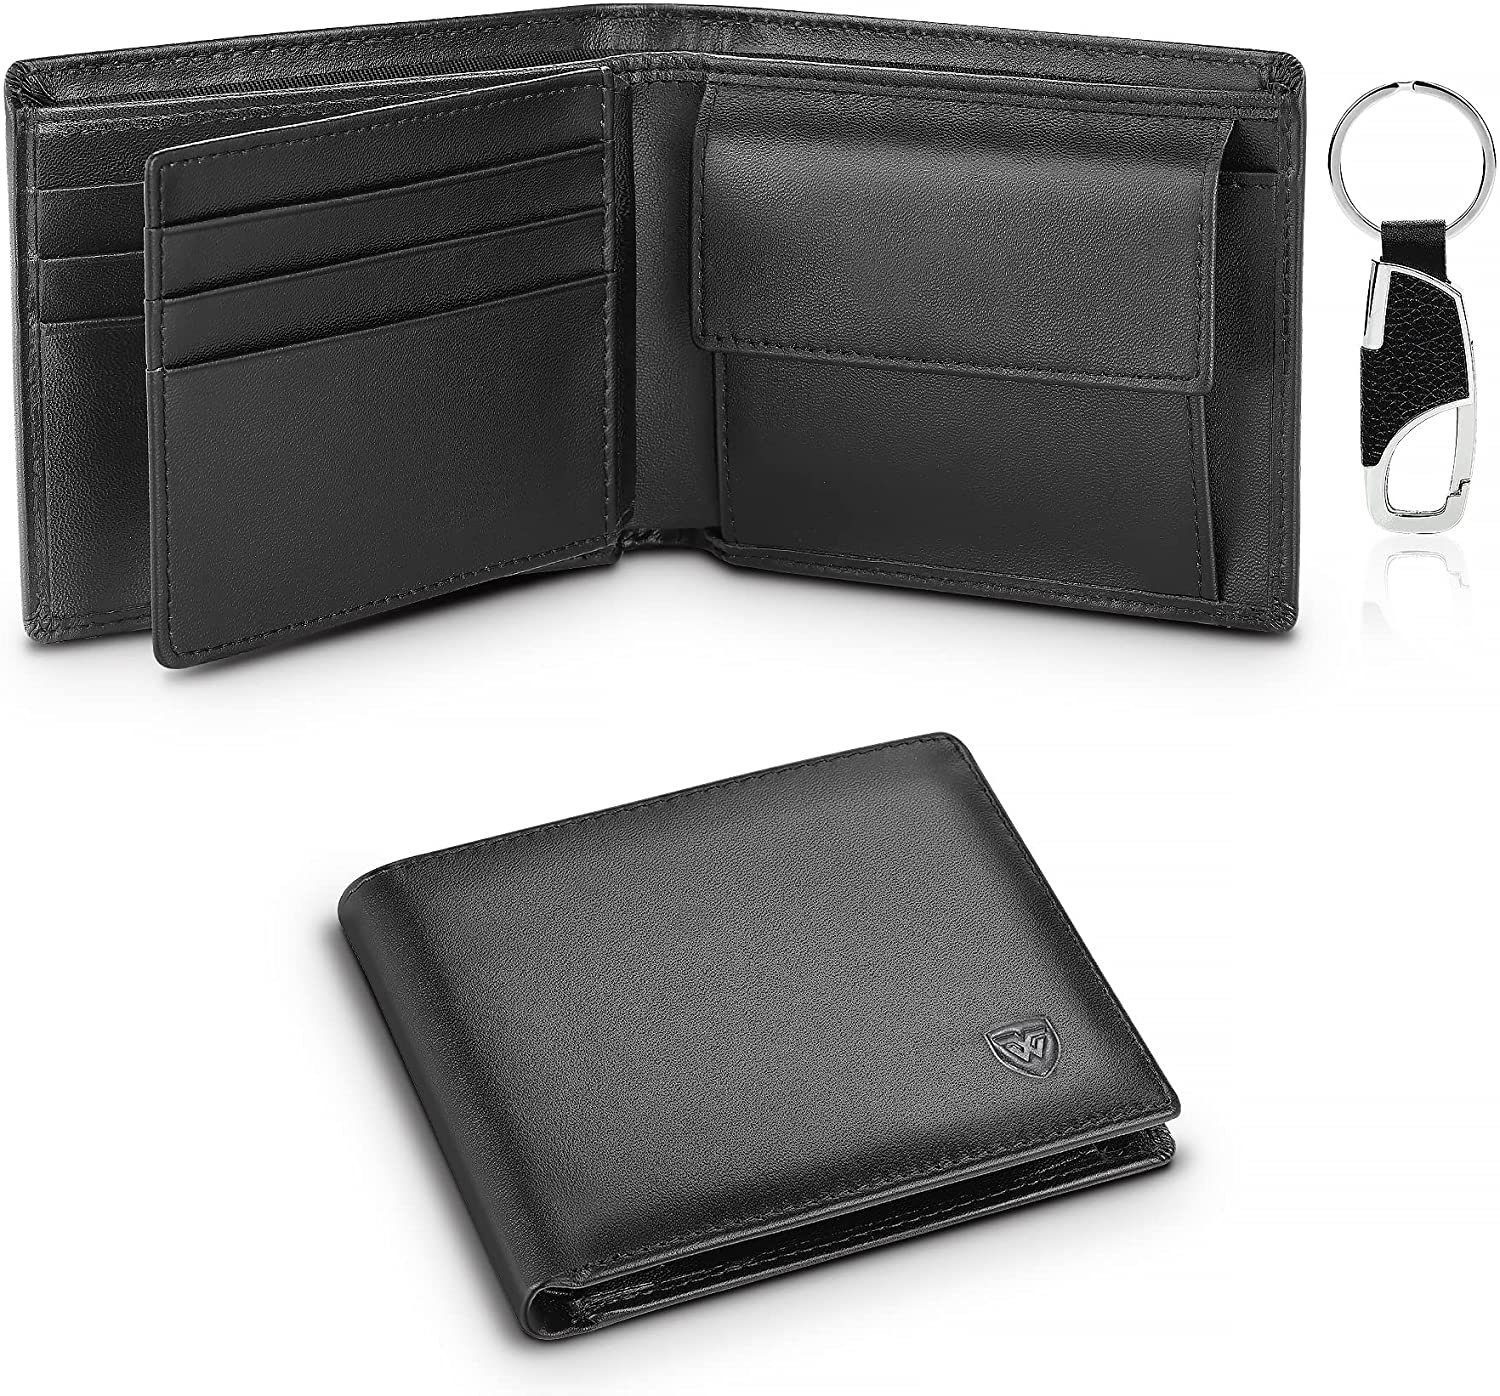 Geldbörse Herrenmode Herrengeldbörse Portemonnaie schwarzen aus Leder, aus Leder. TEEHON RFID reinem